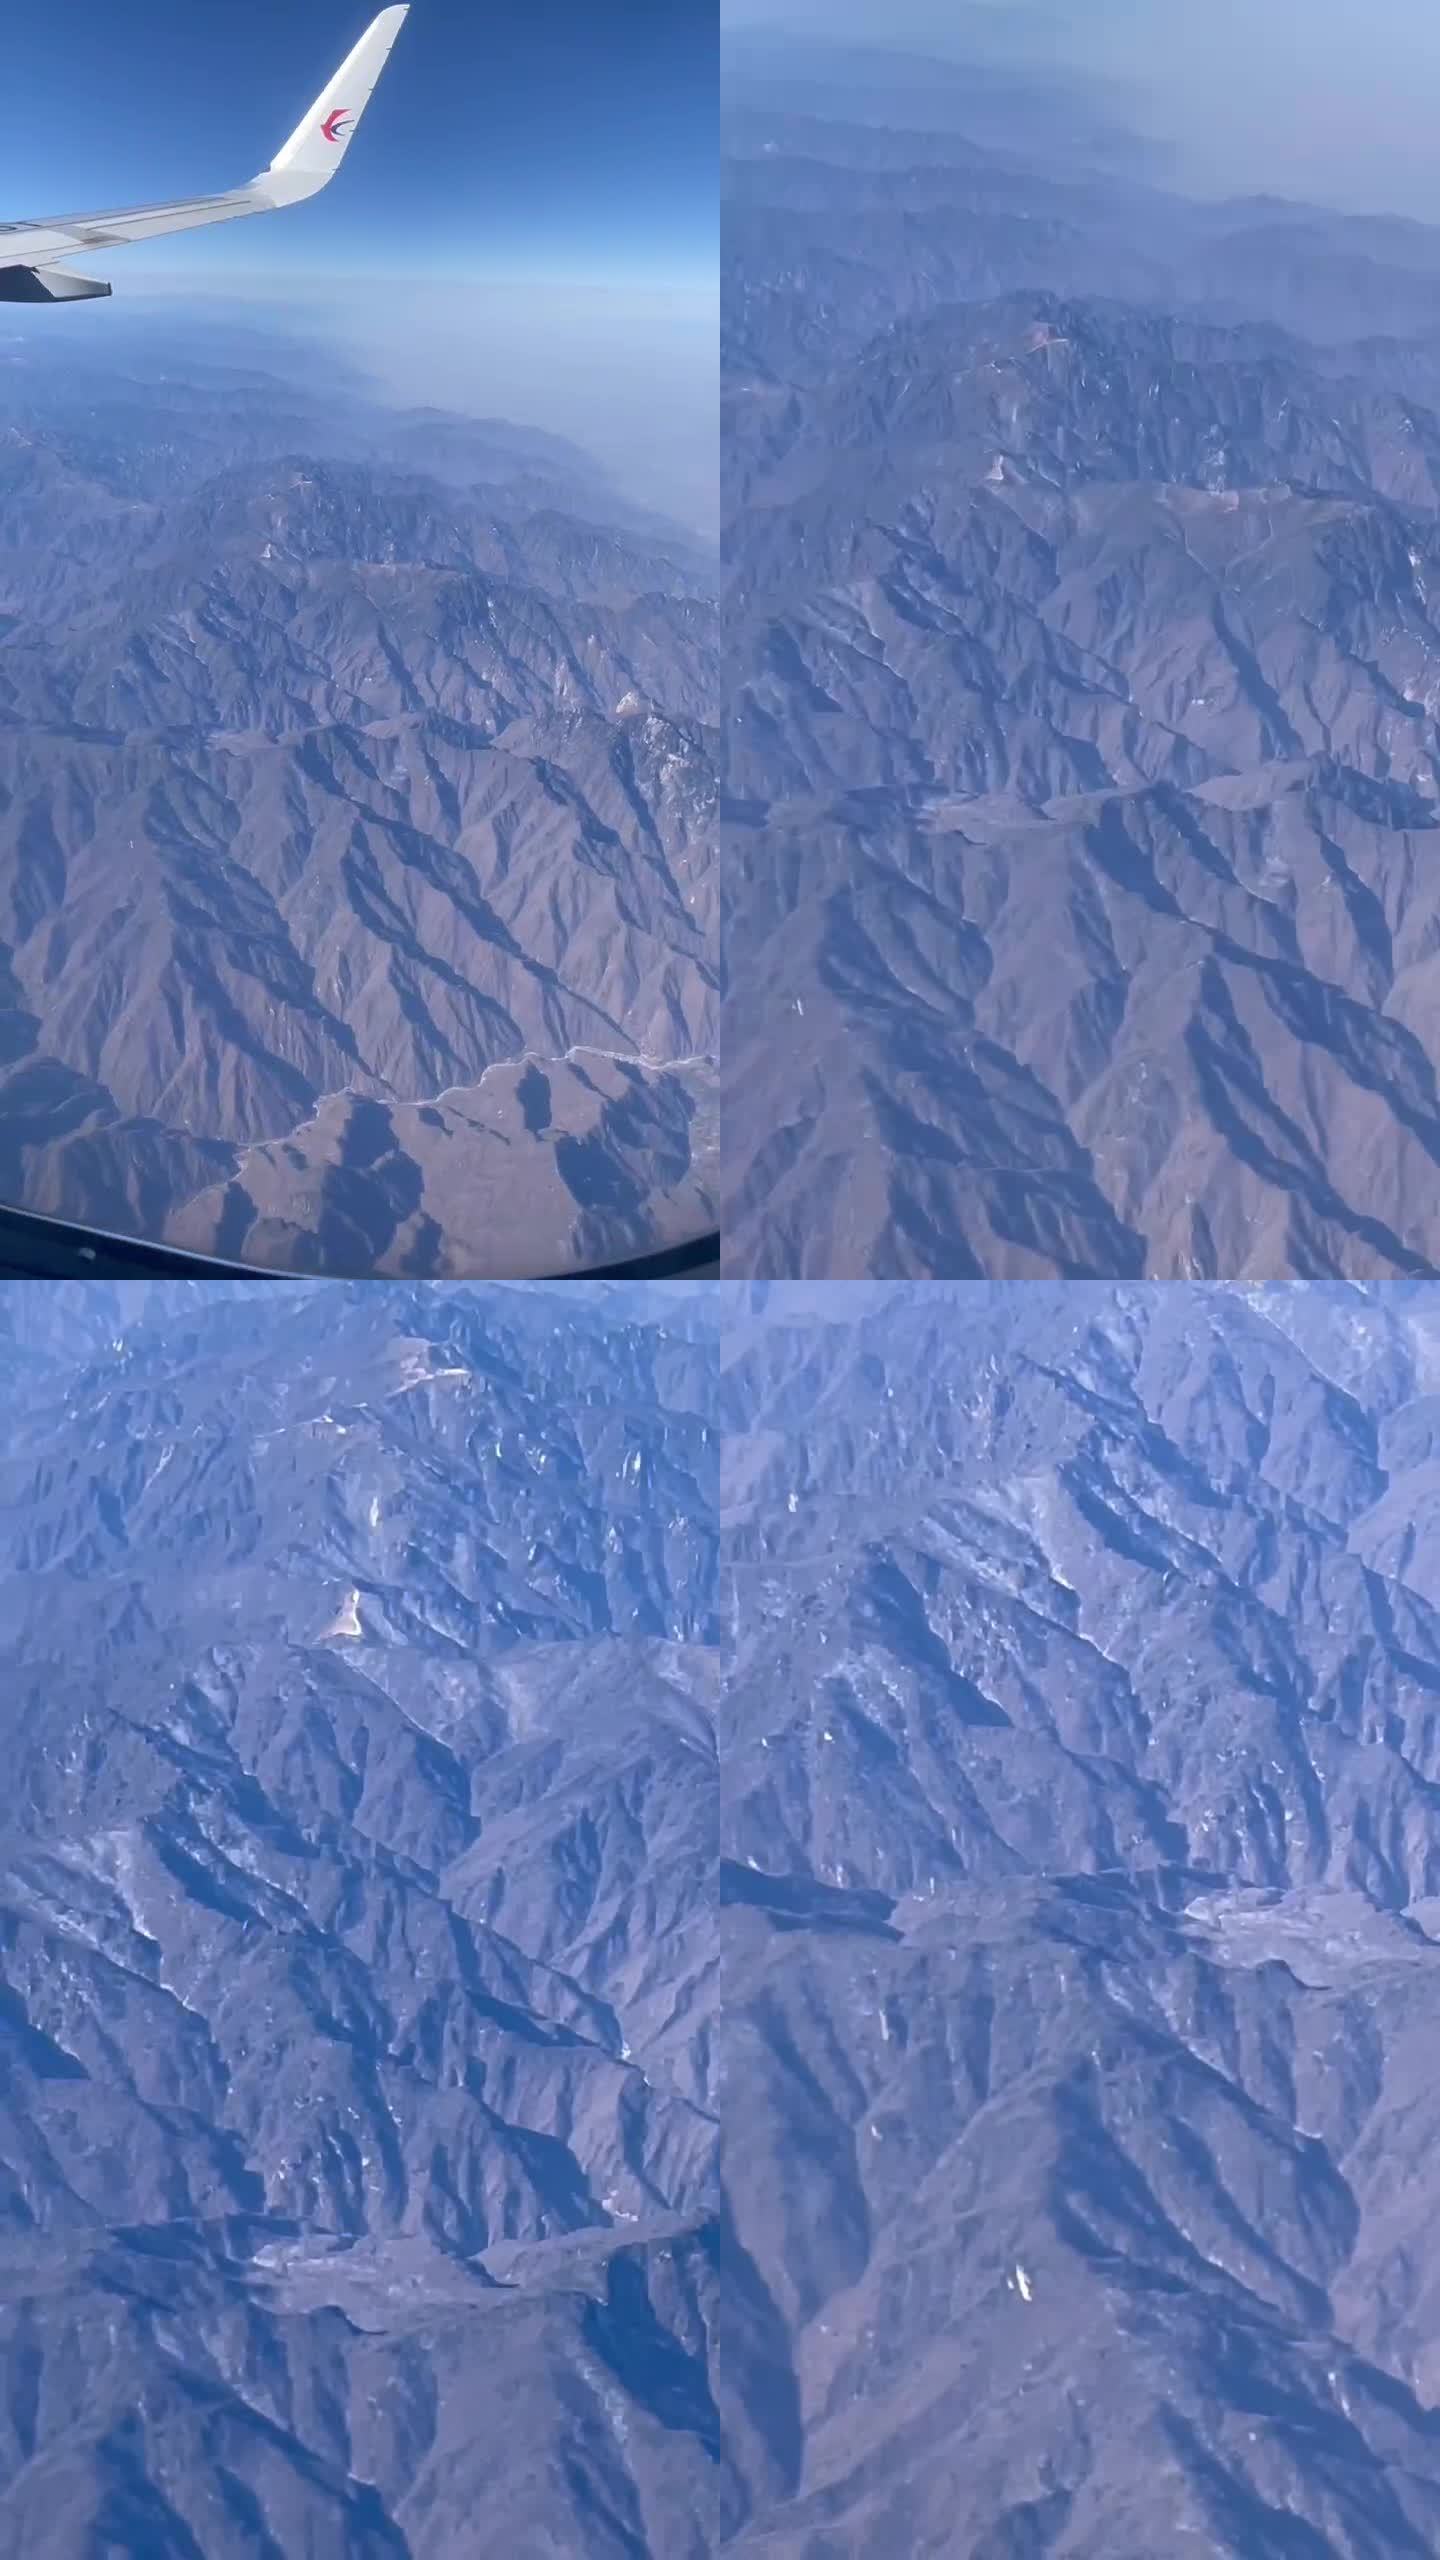 飞机上拍摄高山